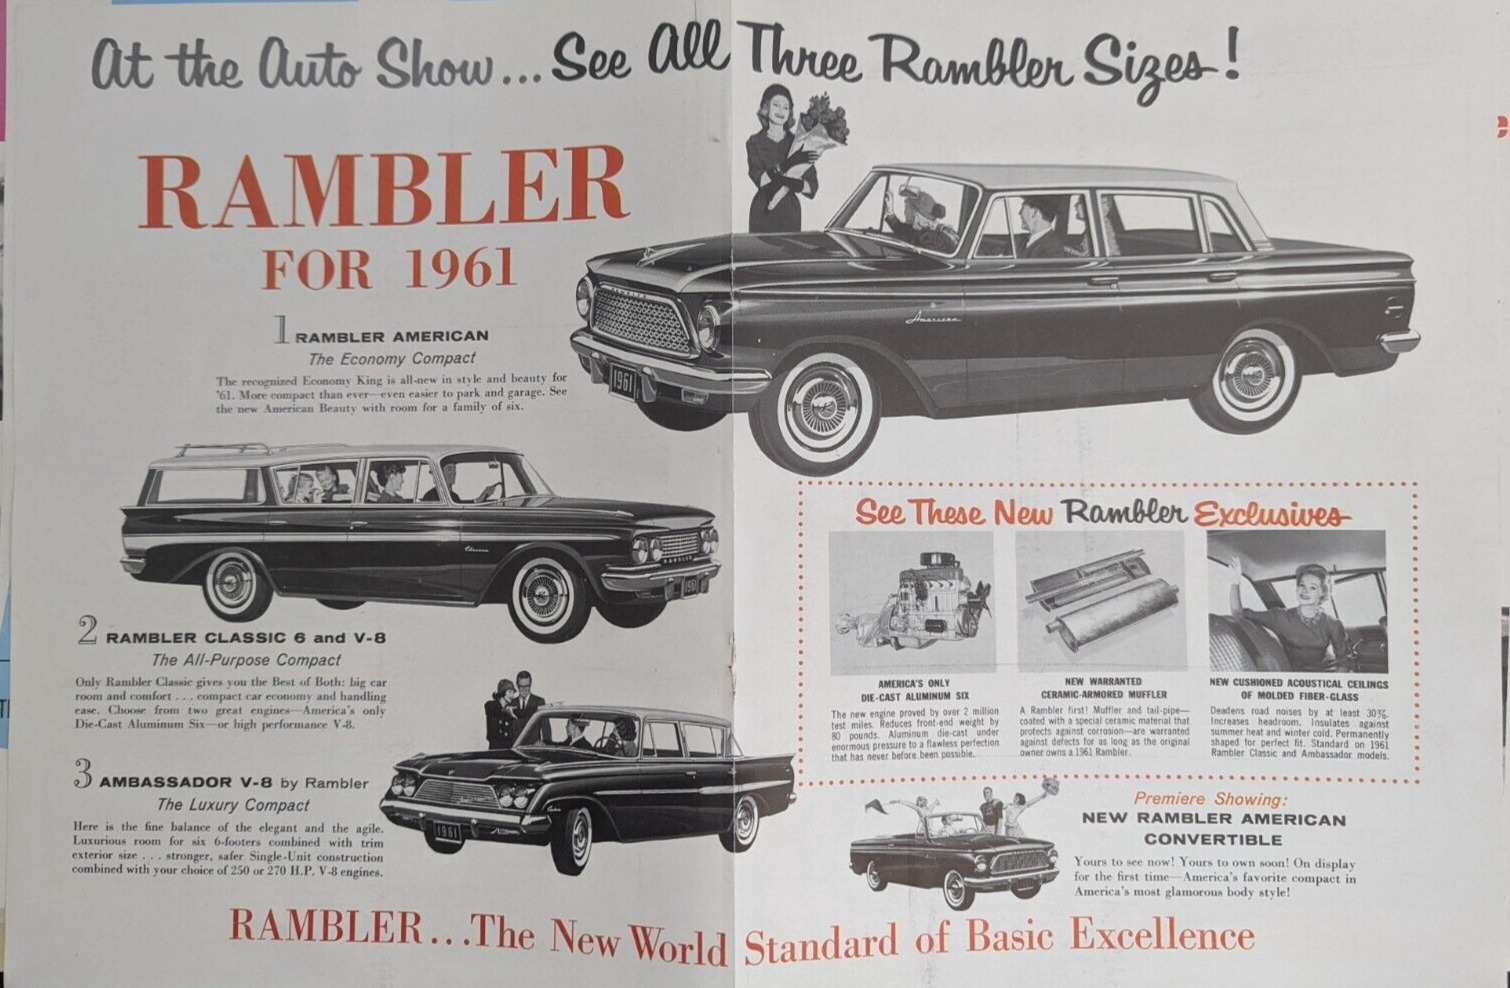 1961 Rambler American Classic Ambassador Convertible Model Line Vintage Print Ad